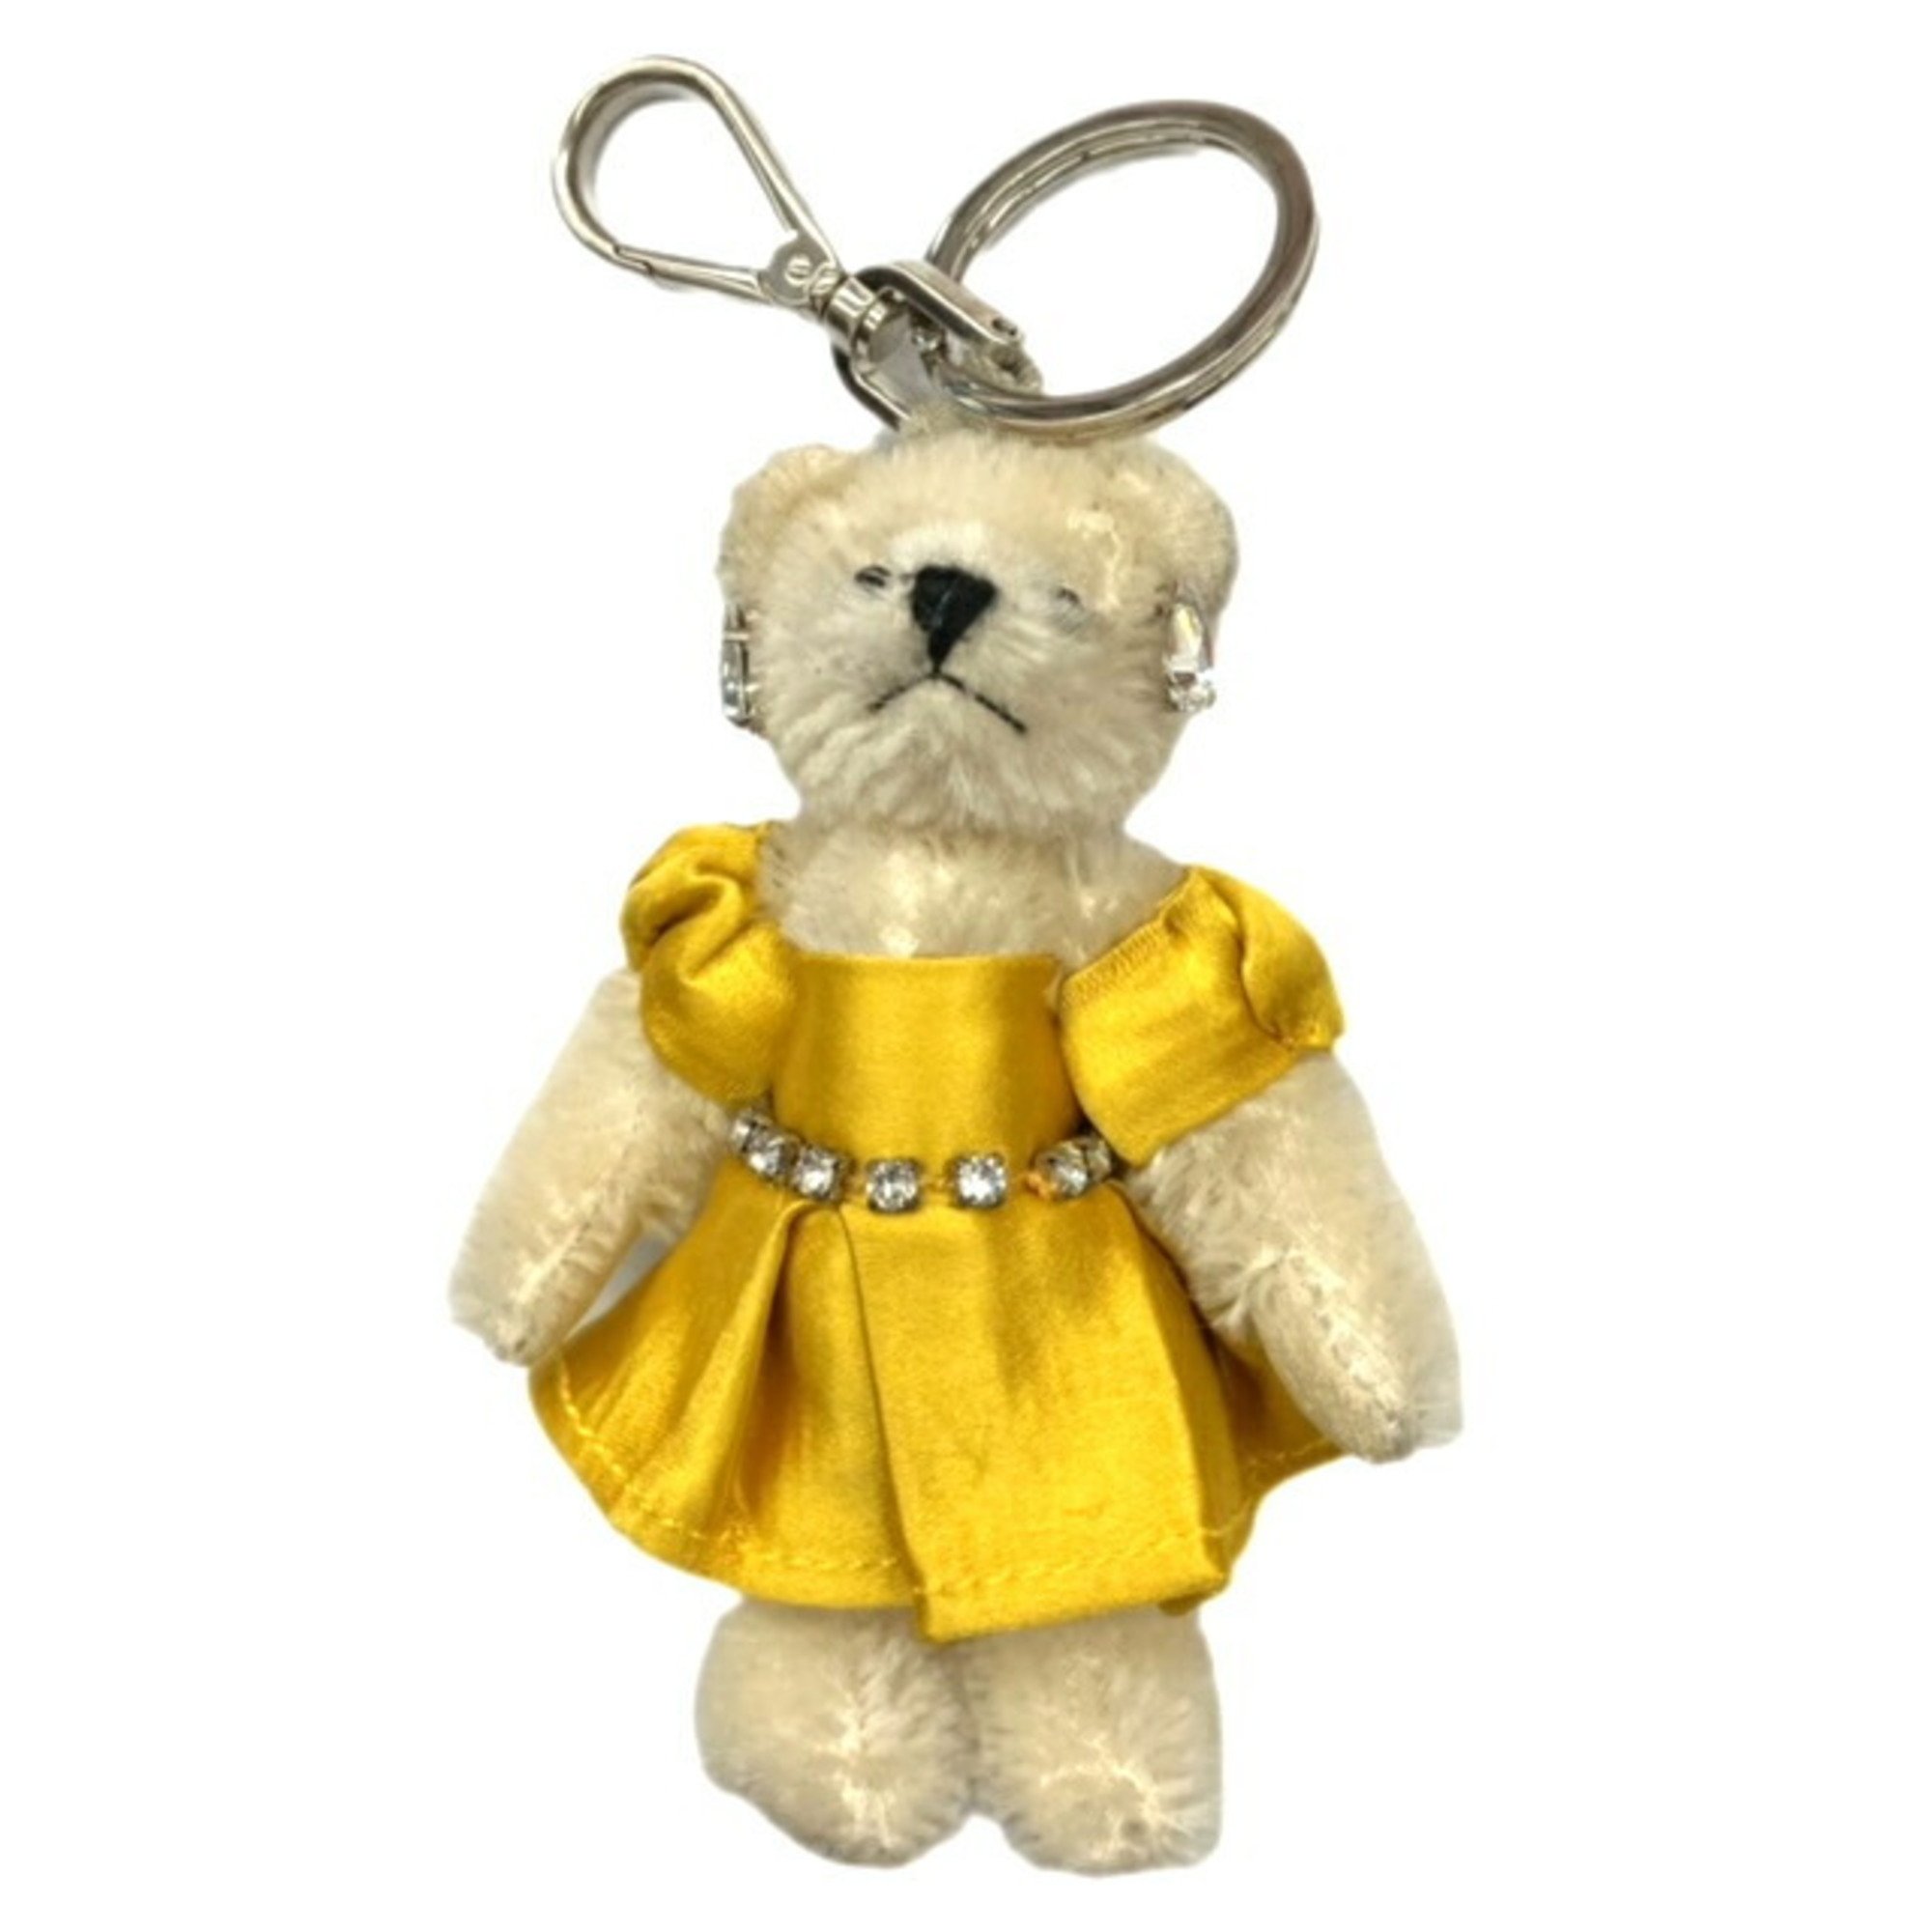 PRADA Bear Keychain 1T0026 Yellow Dress